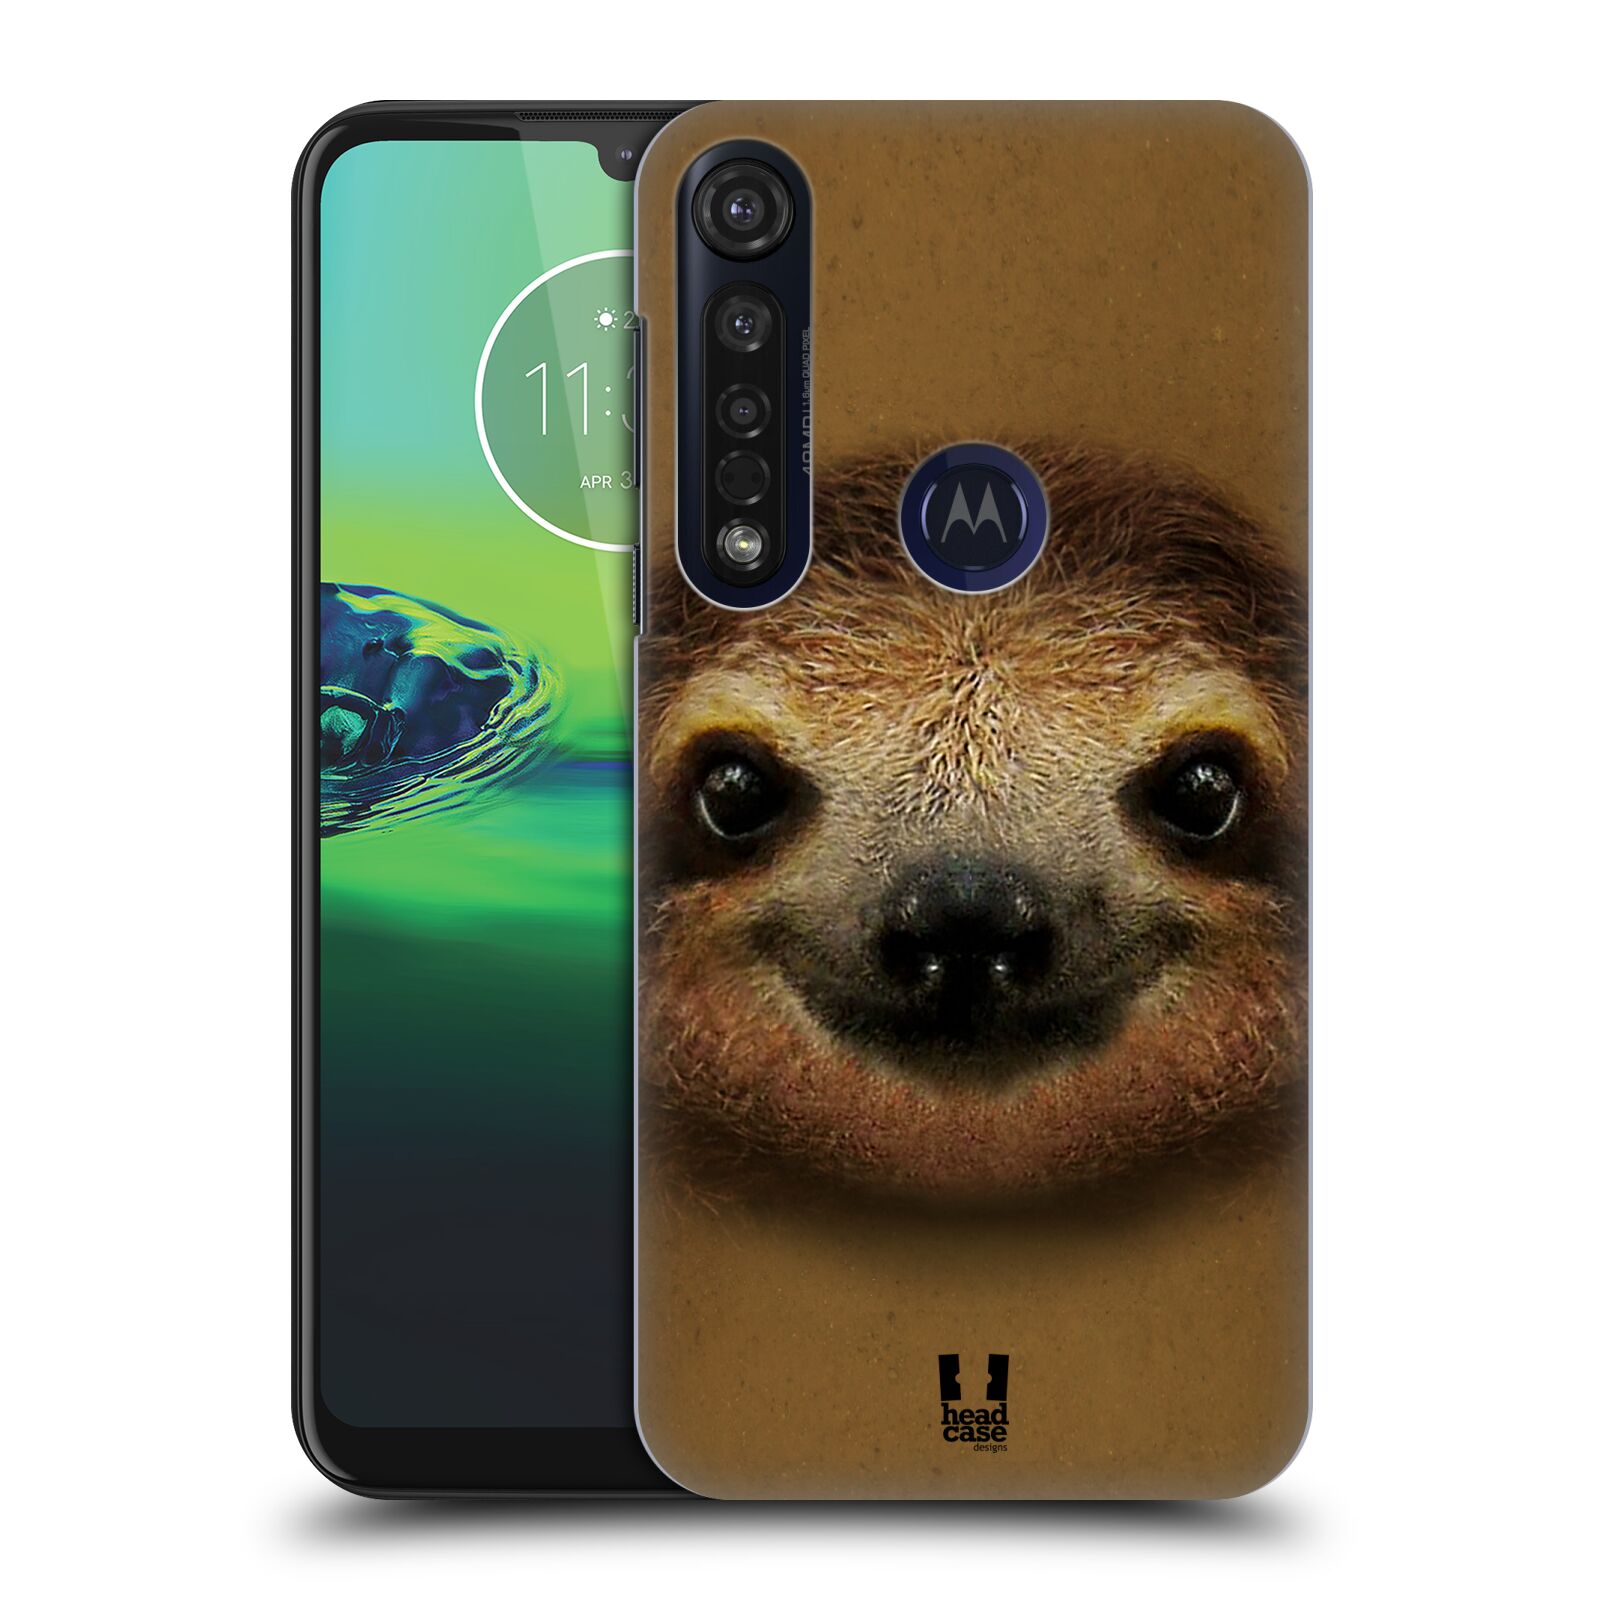 Pouzdro na mobil Motorola Moto G8 PLUS - HEAD CASE - vzor Zvířecí tváře 2 lenochod